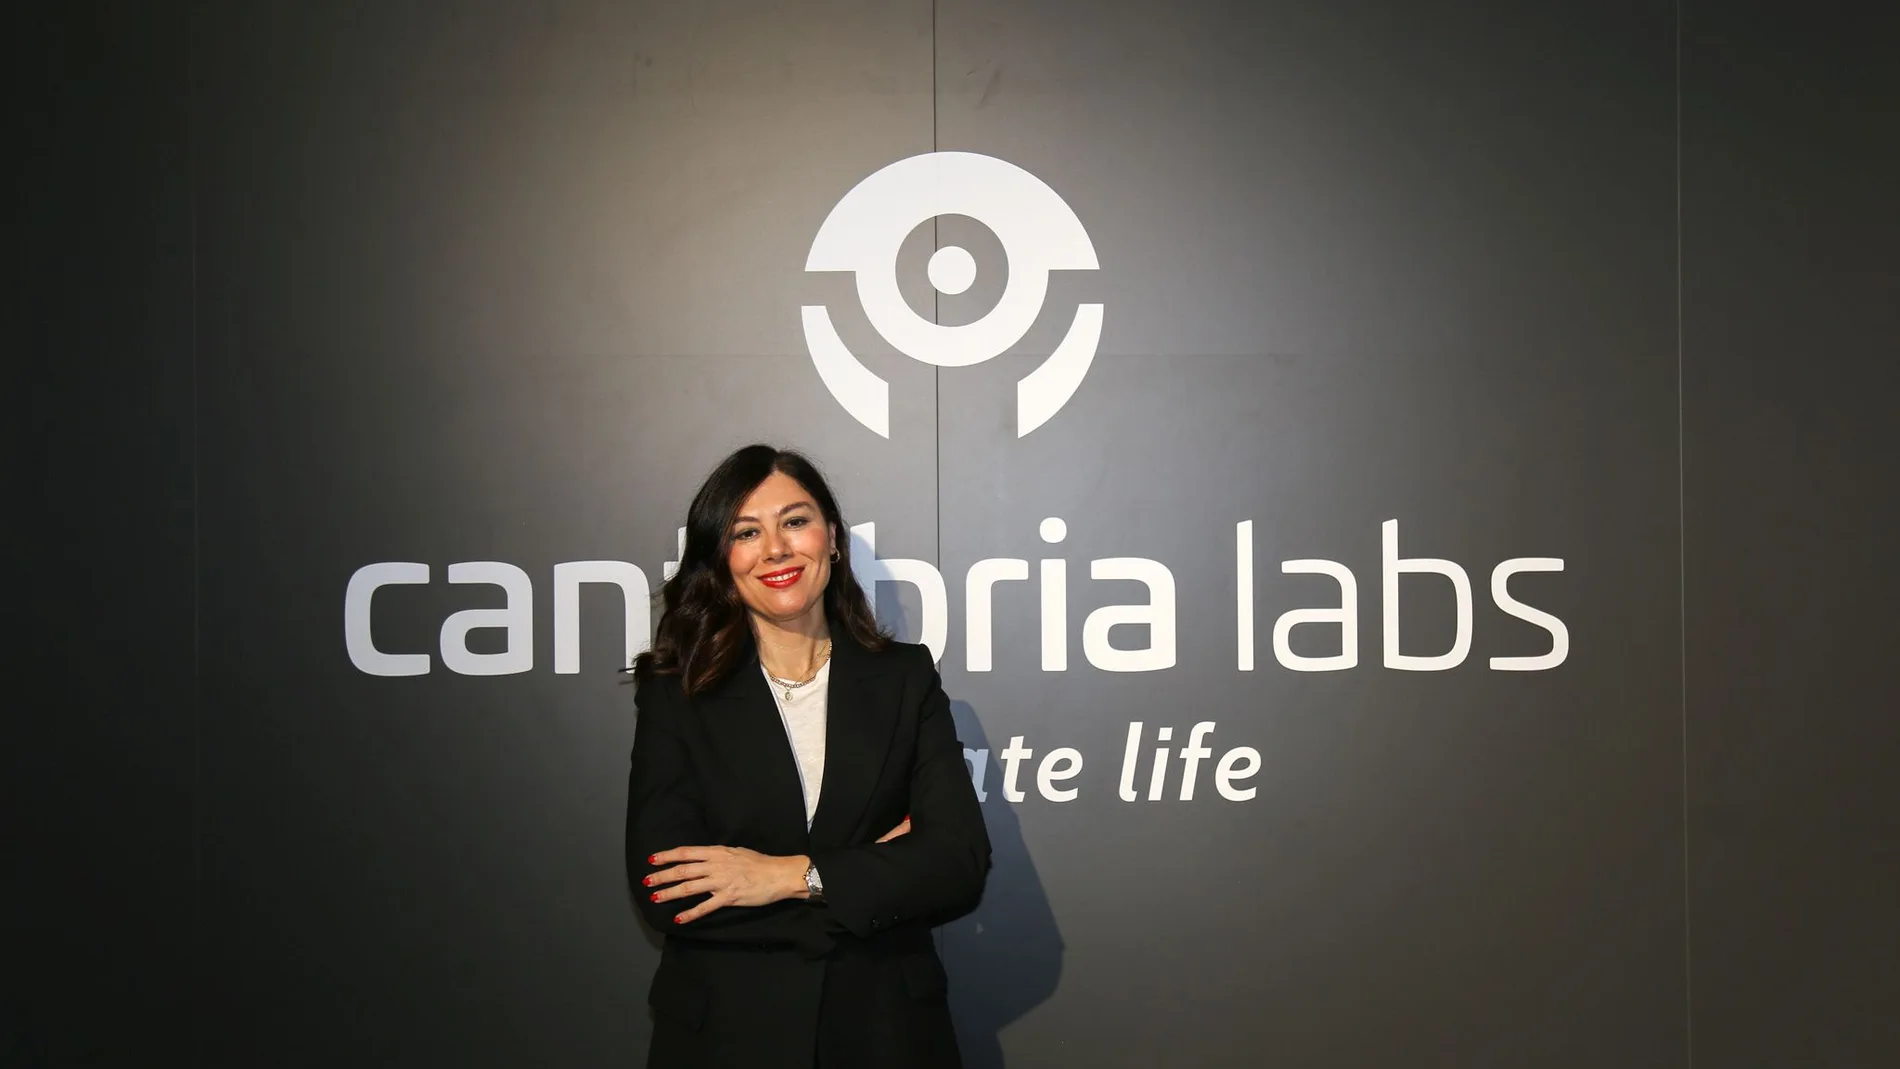 La CEO de Cantabria labs, Susana Rodríguez